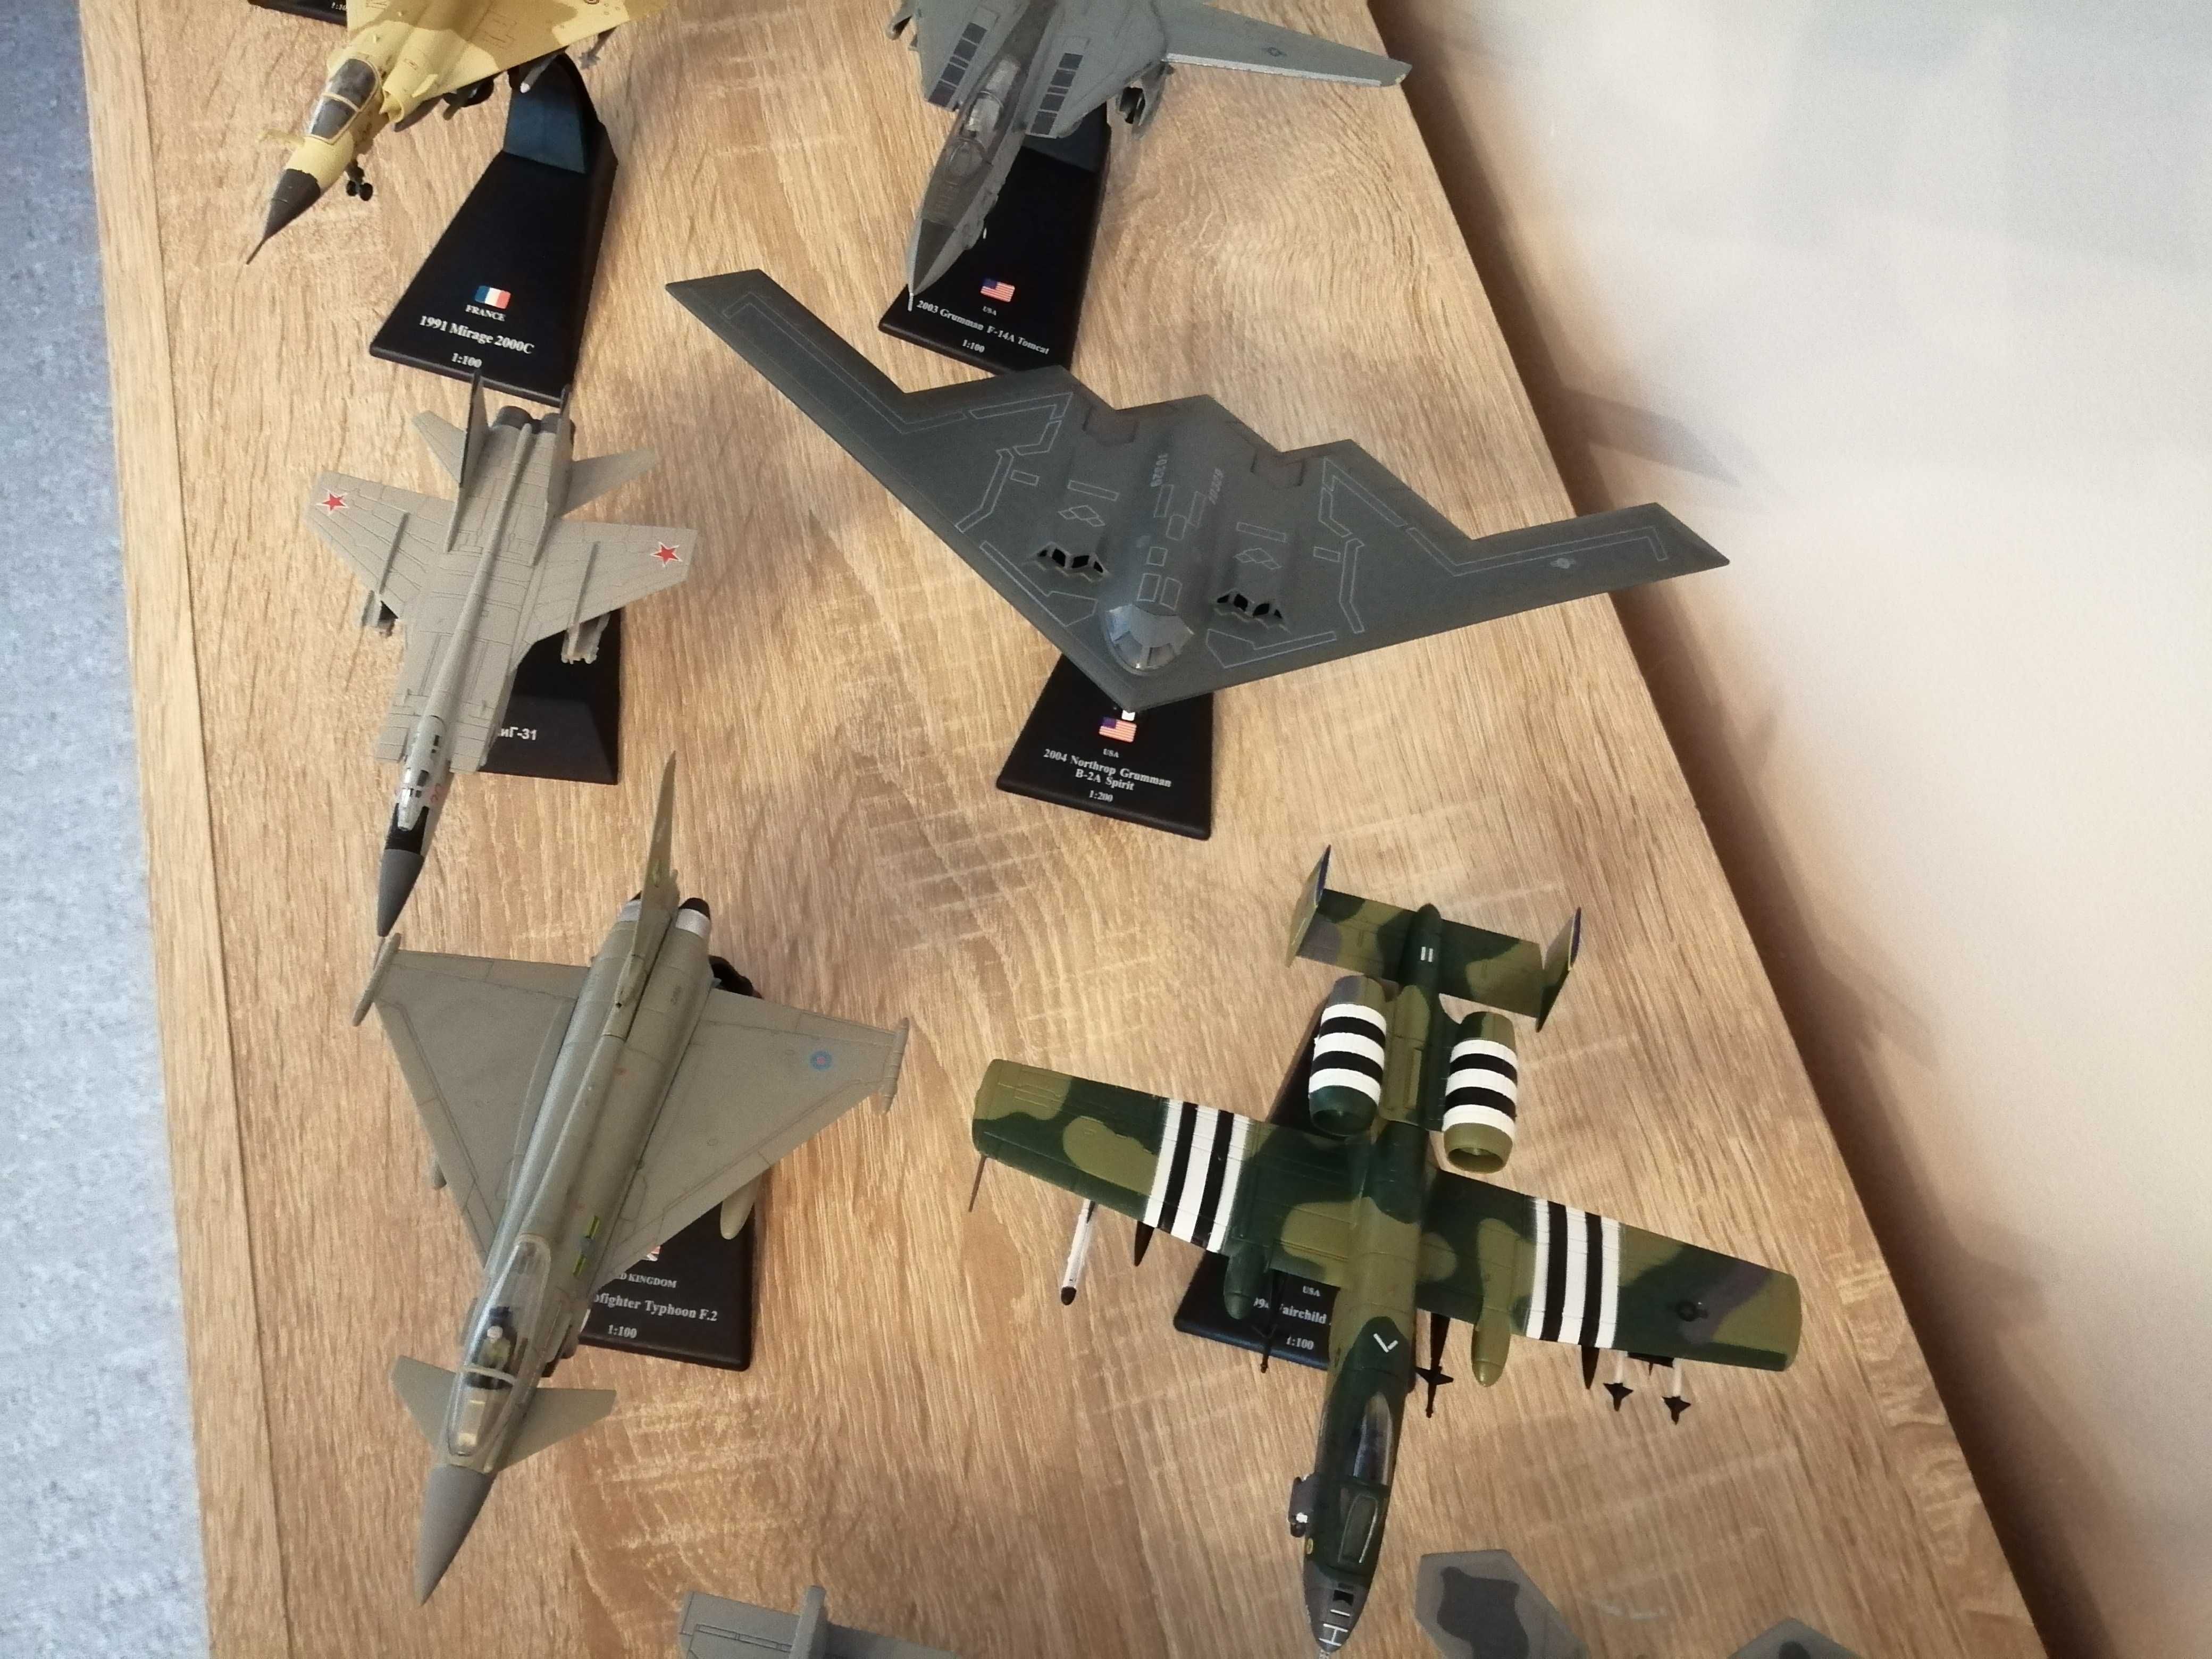 Kolekcja siedemnastu samolotów myśliwskich